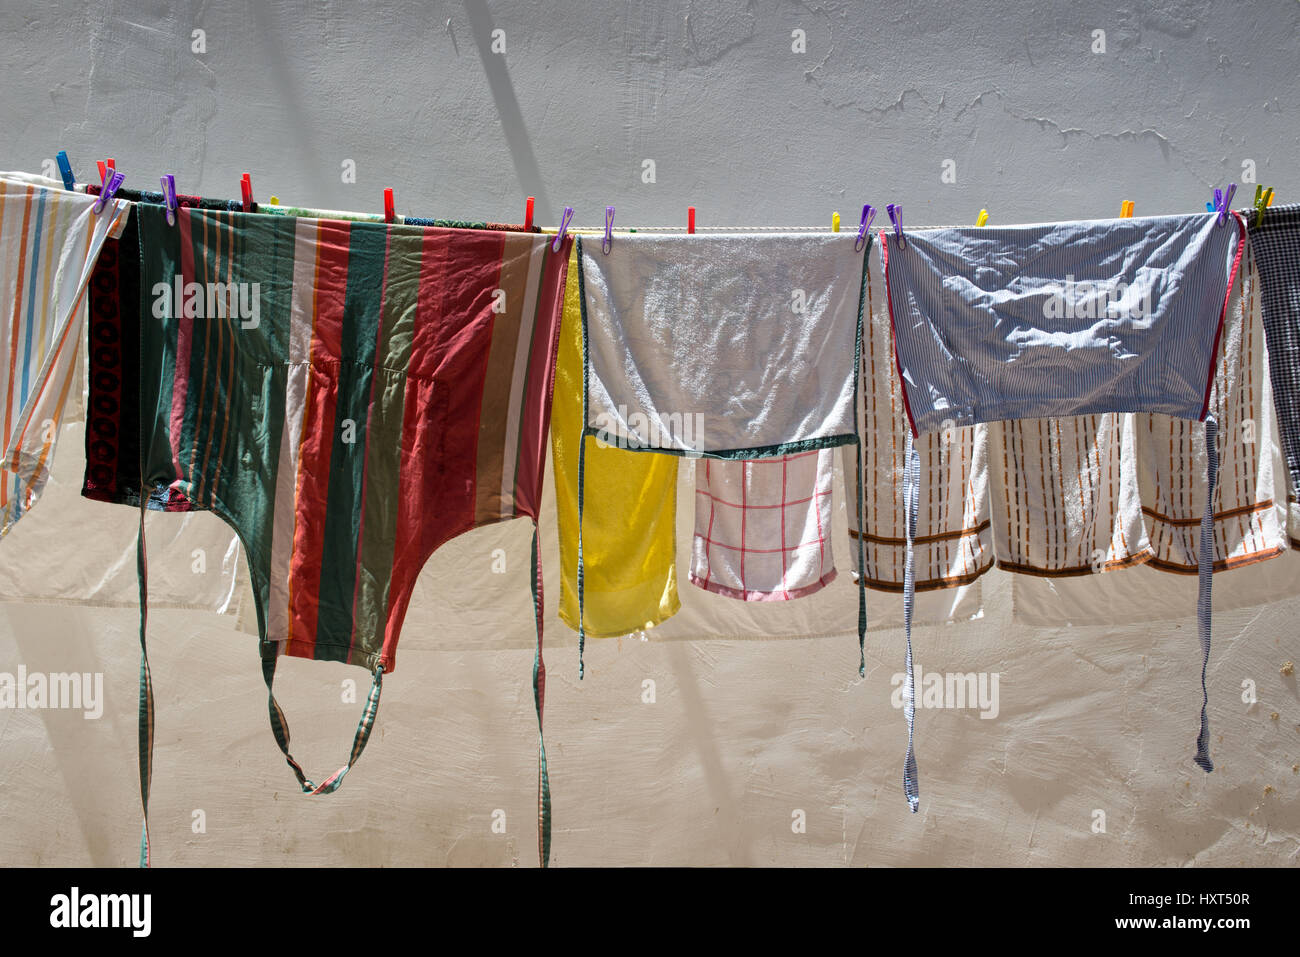 Bunte Wäsche auf einer Wäscheleine vor weißer Wand von Sonne angestrahlt, Insel Kastellorizo, Dodekanes, Griechenland Foto Stock